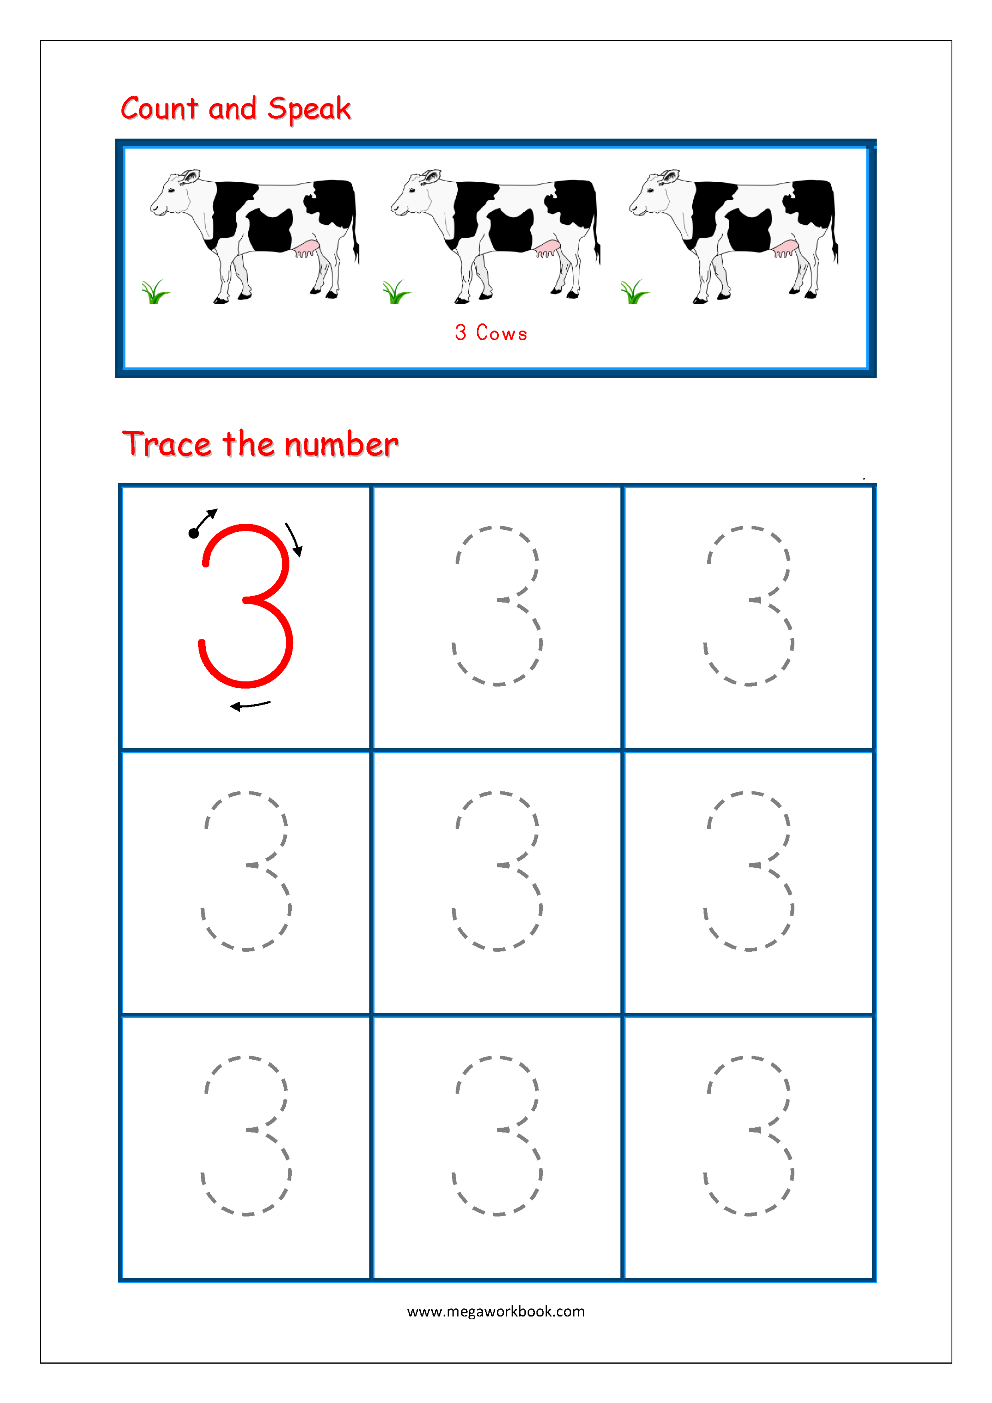 number tracing tracing numbers number tracing worksheets tracing numbers 1 to 10 writing numbers 1 to 10 megaworkbook